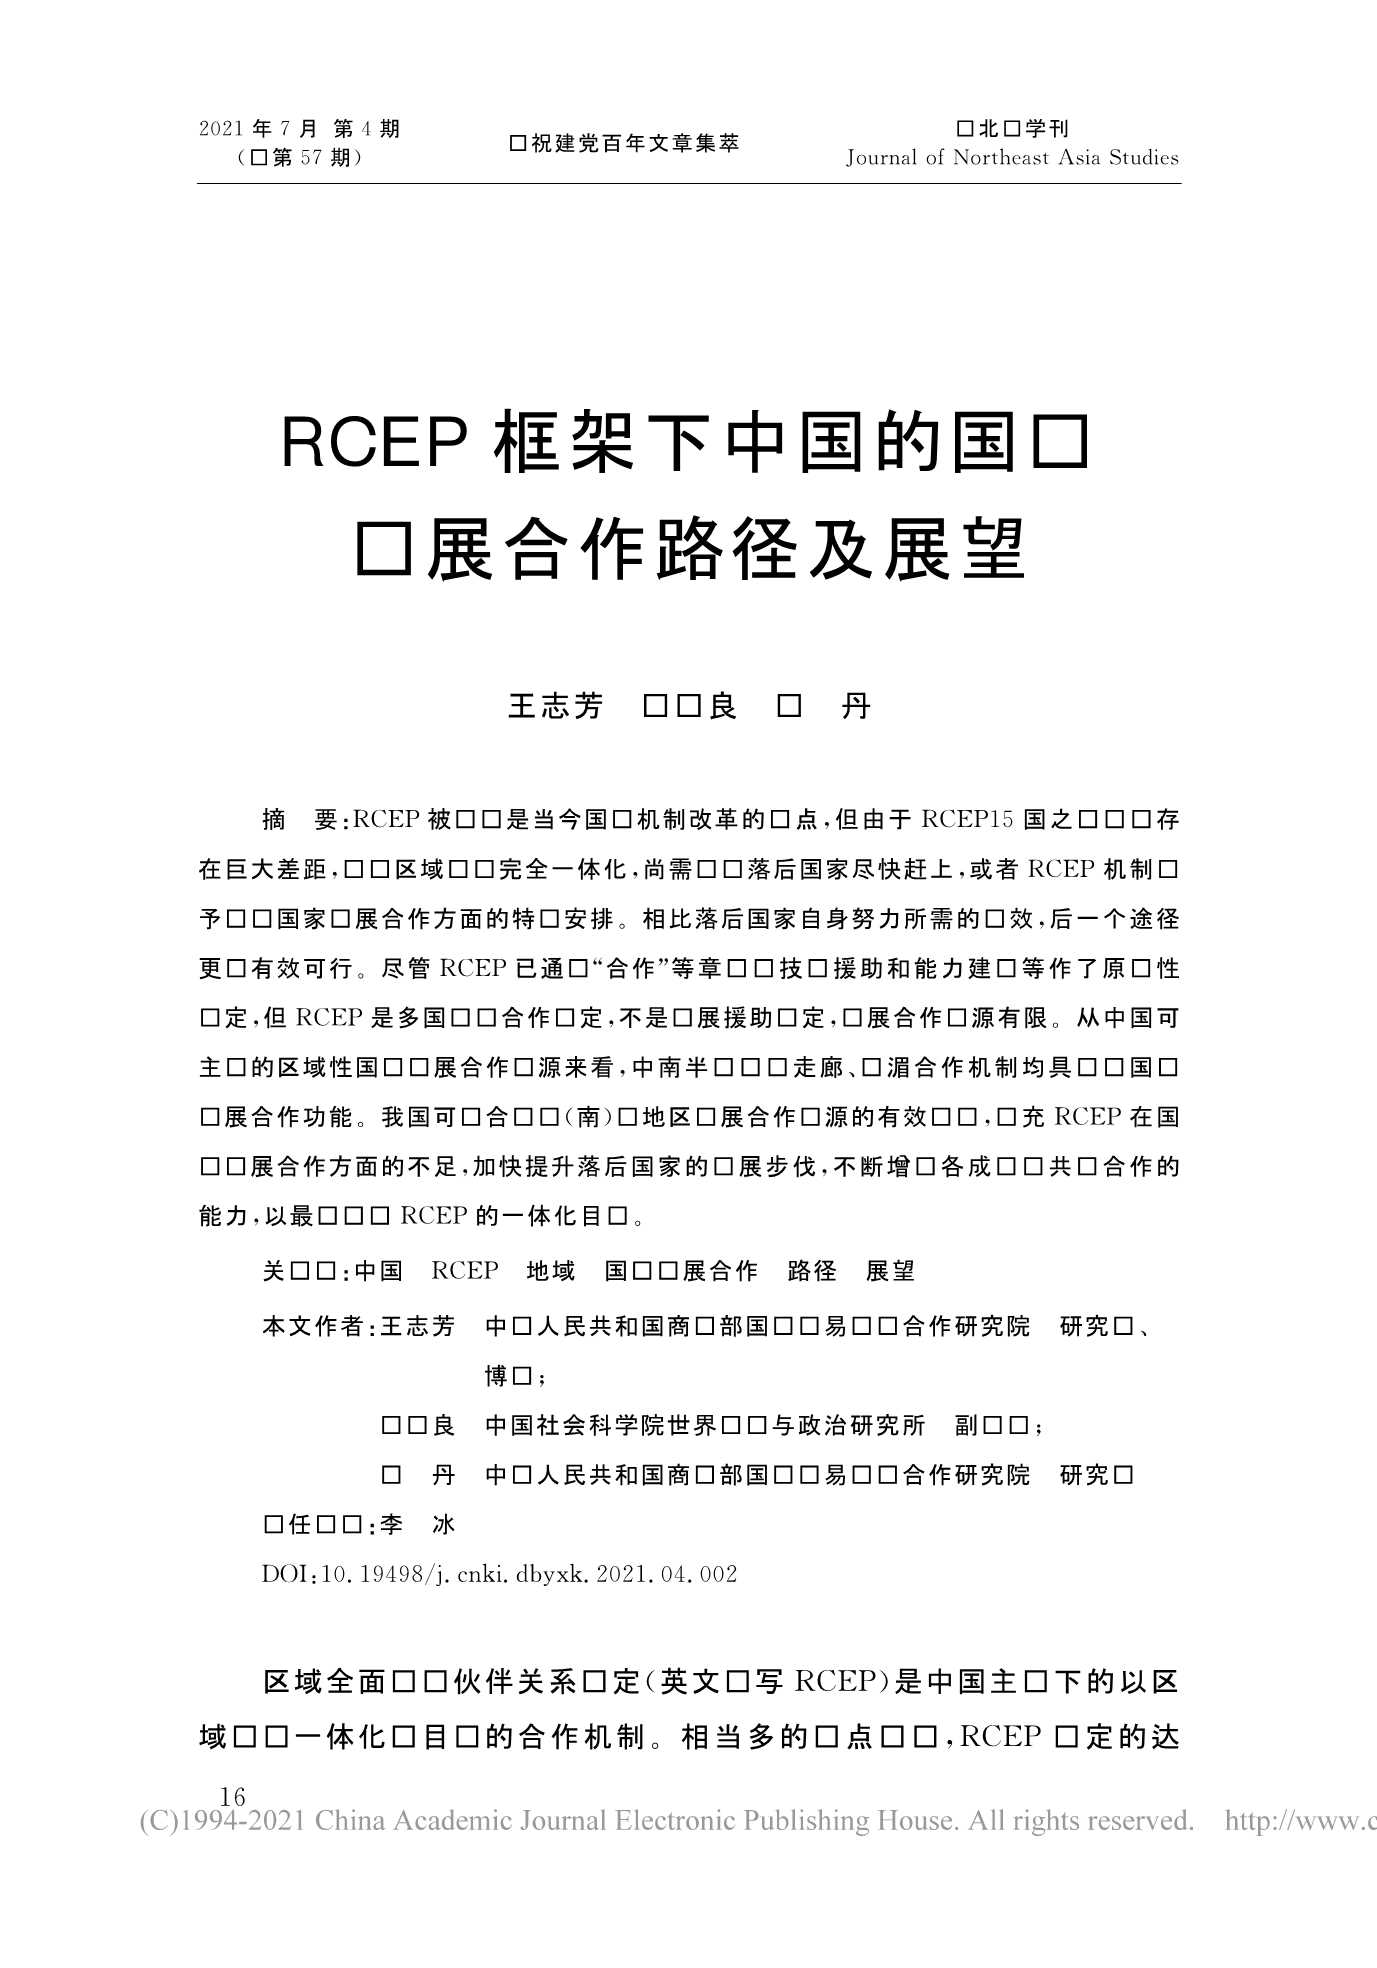 社科院-RCEP框架下中国的国际发展合作路径及展望-2021.08-15页